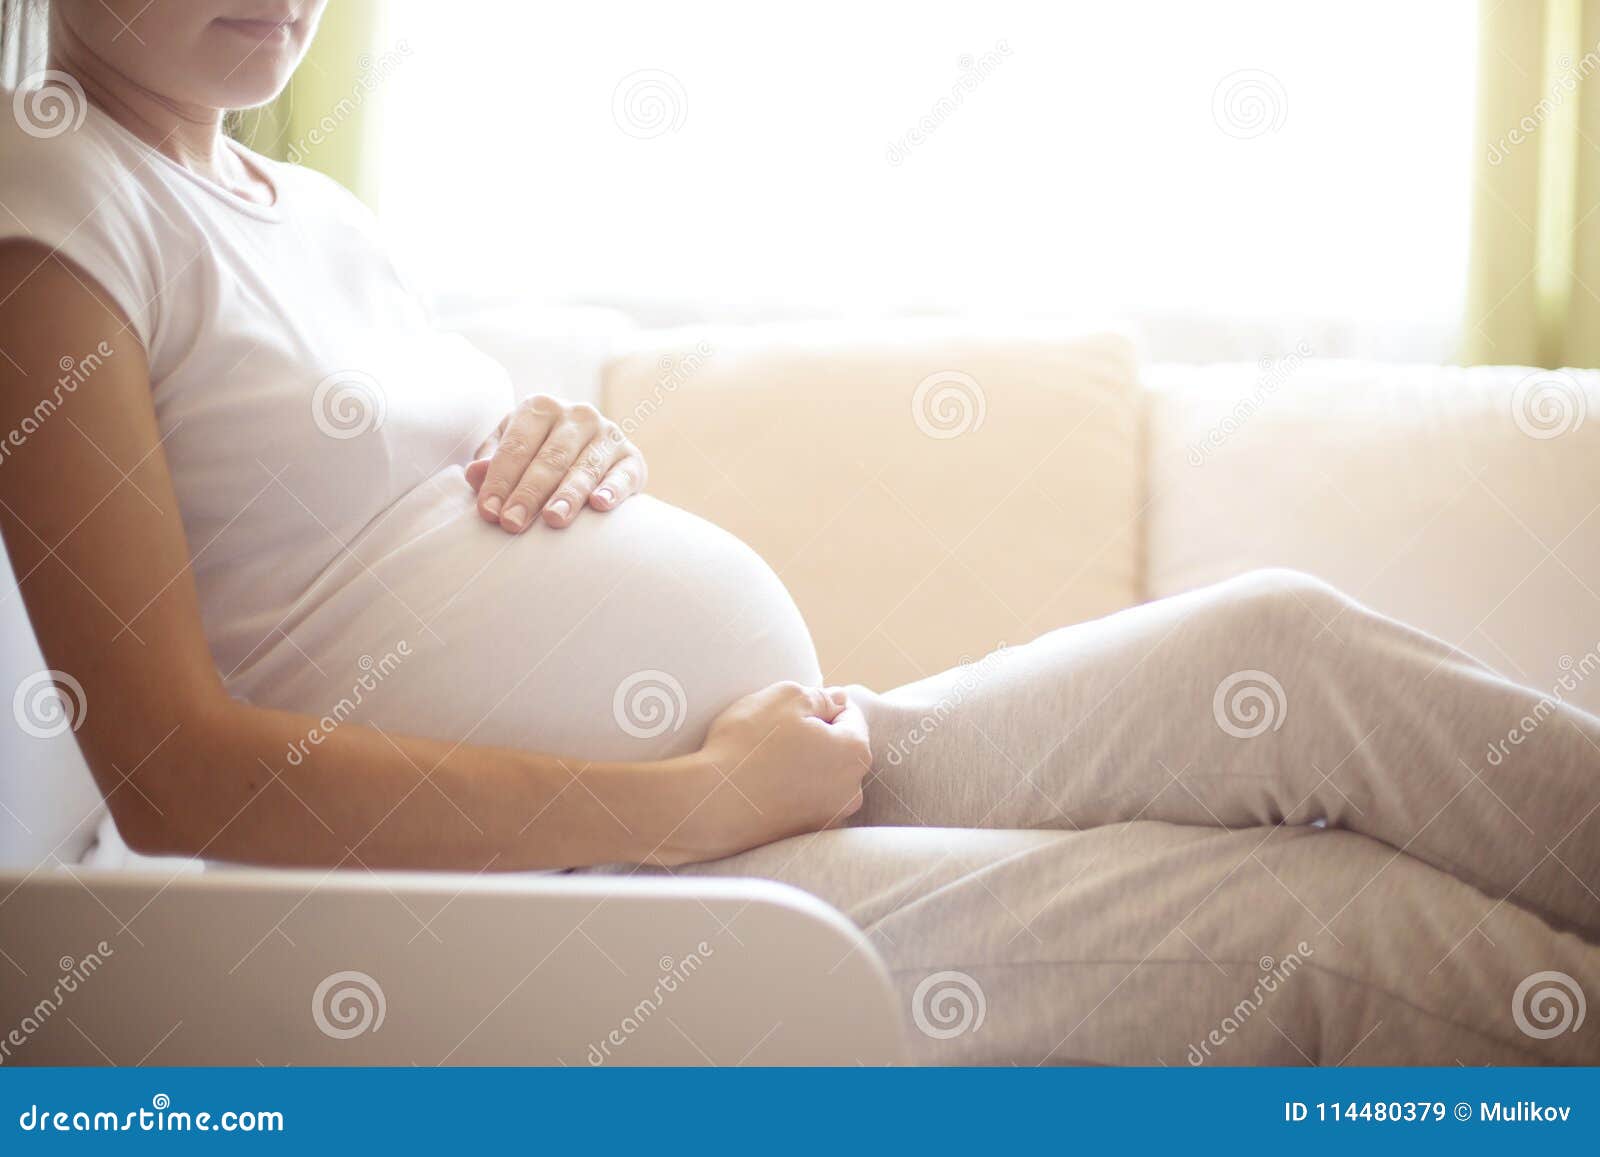 孕晚期胎儿一直动个不停咋回事-菠萝孕育